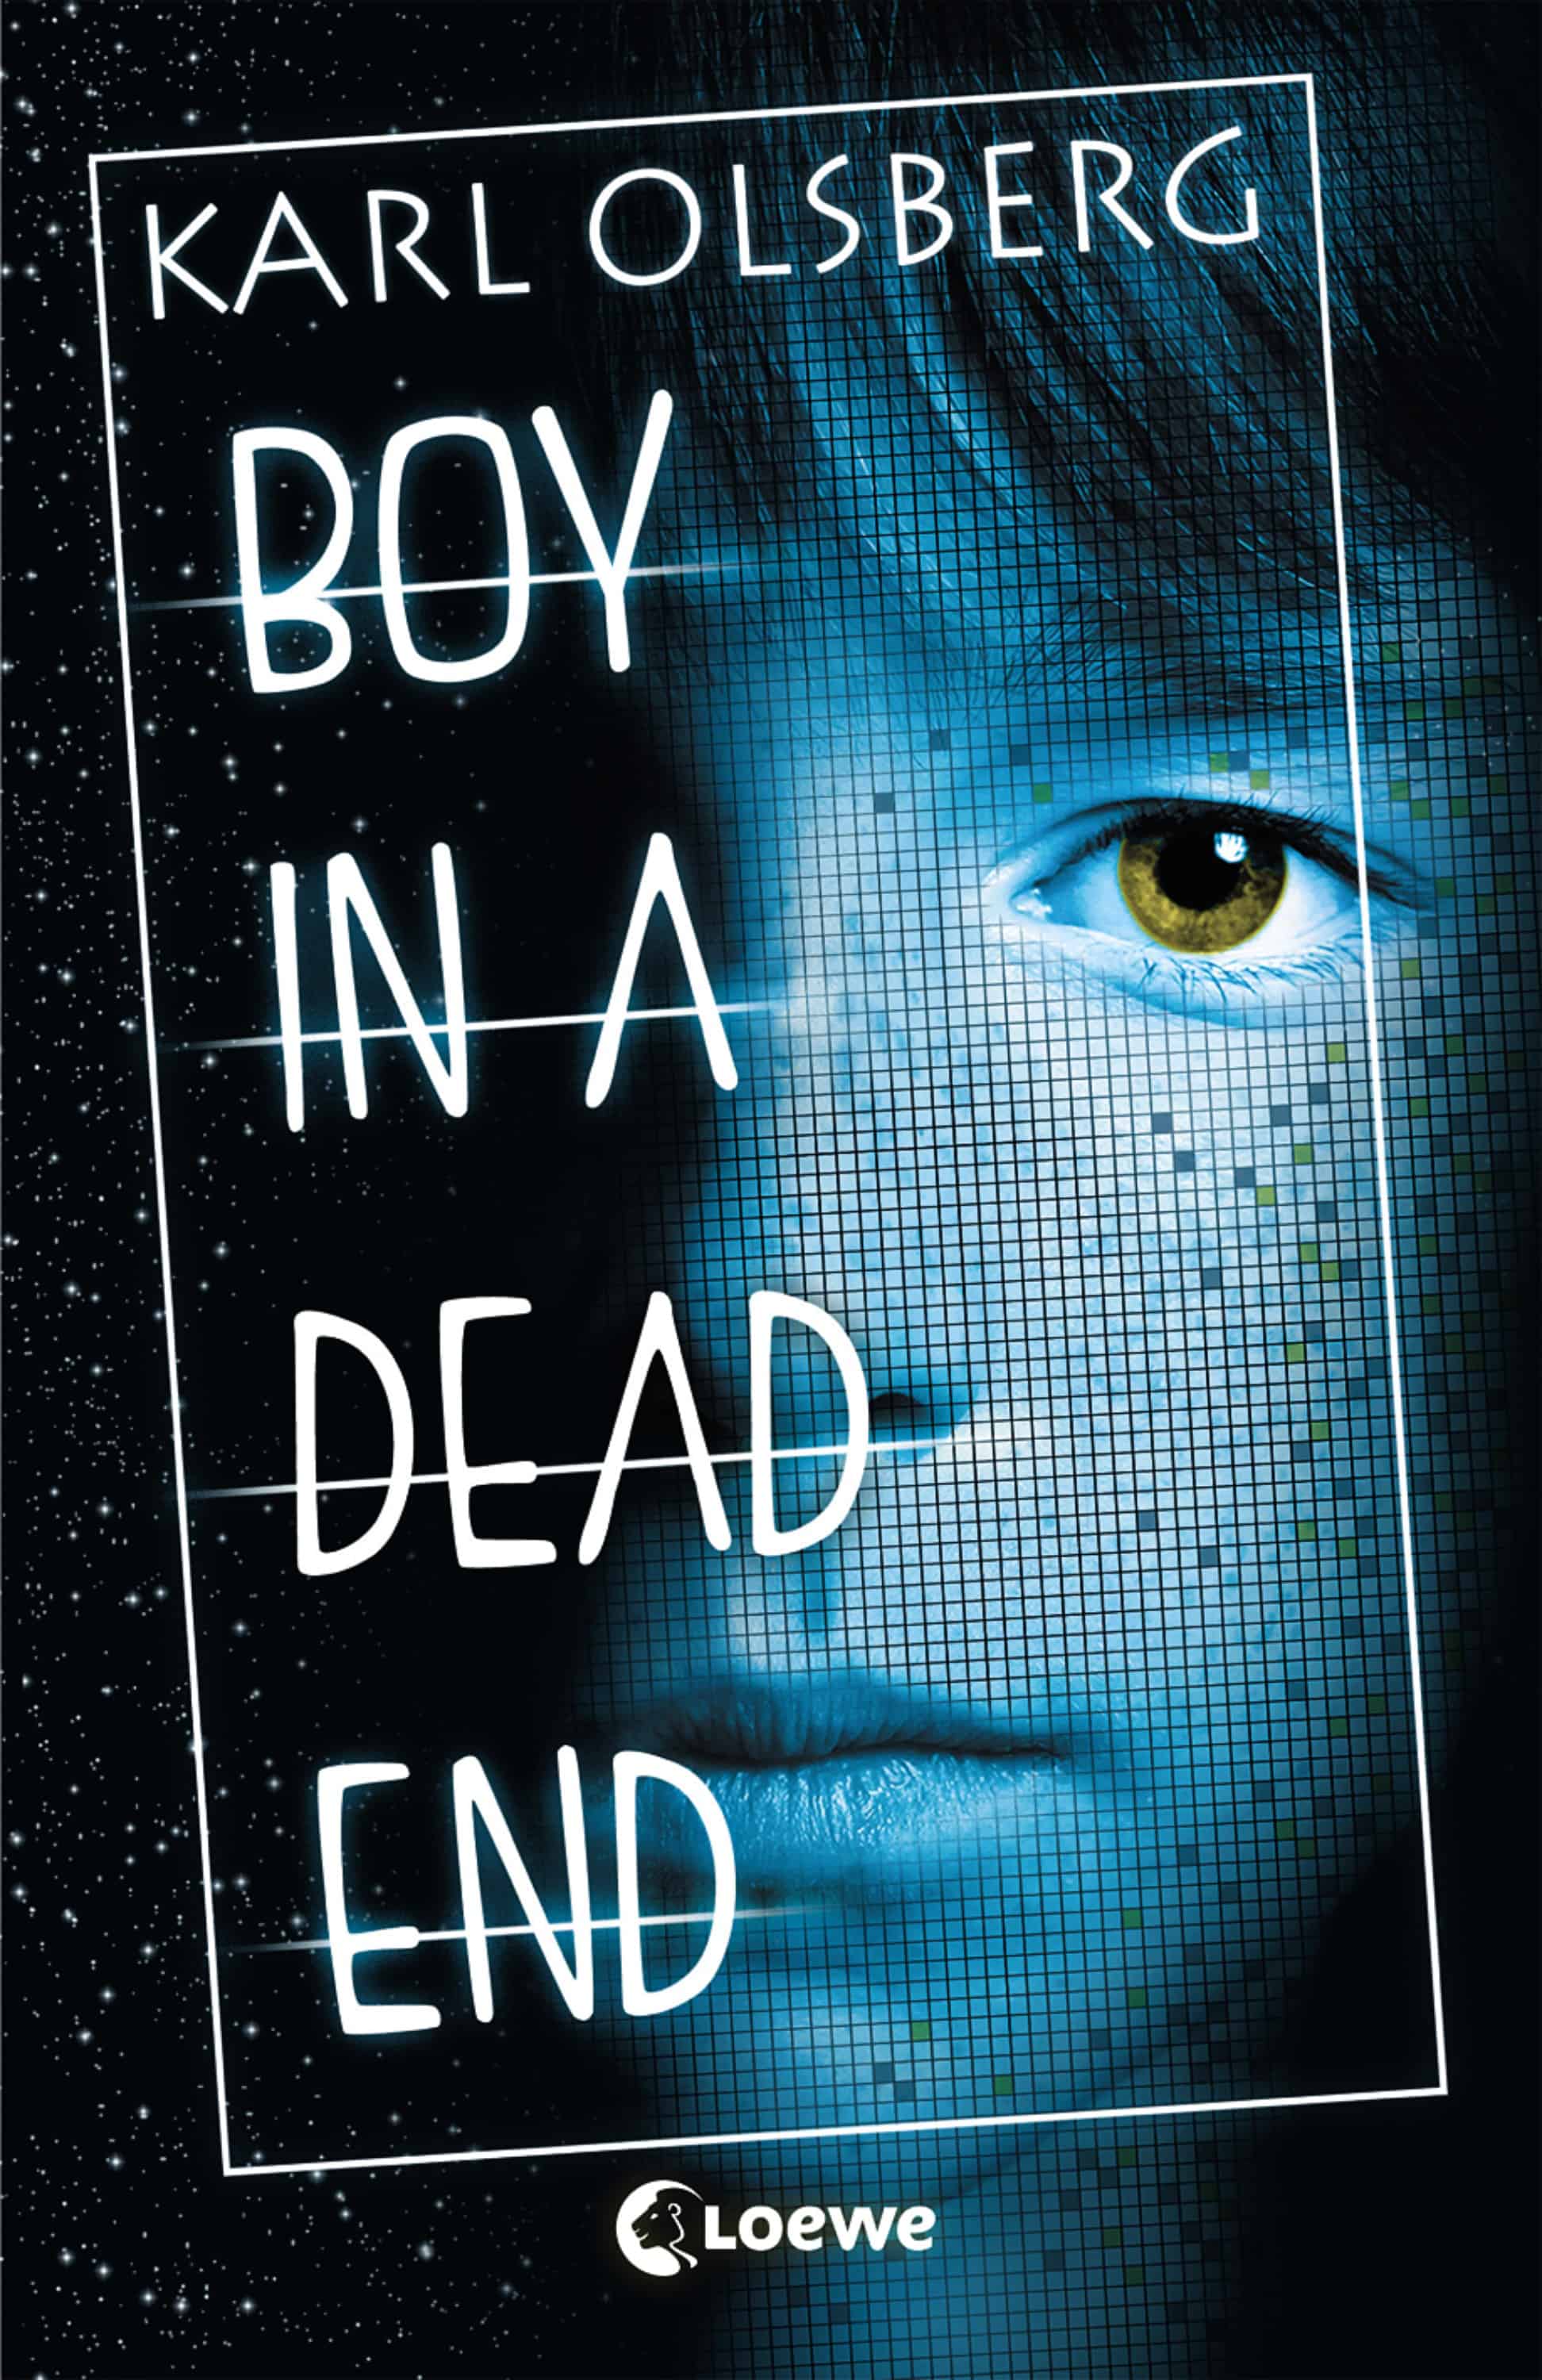 Olsberg, Karl: Boy in a dead end